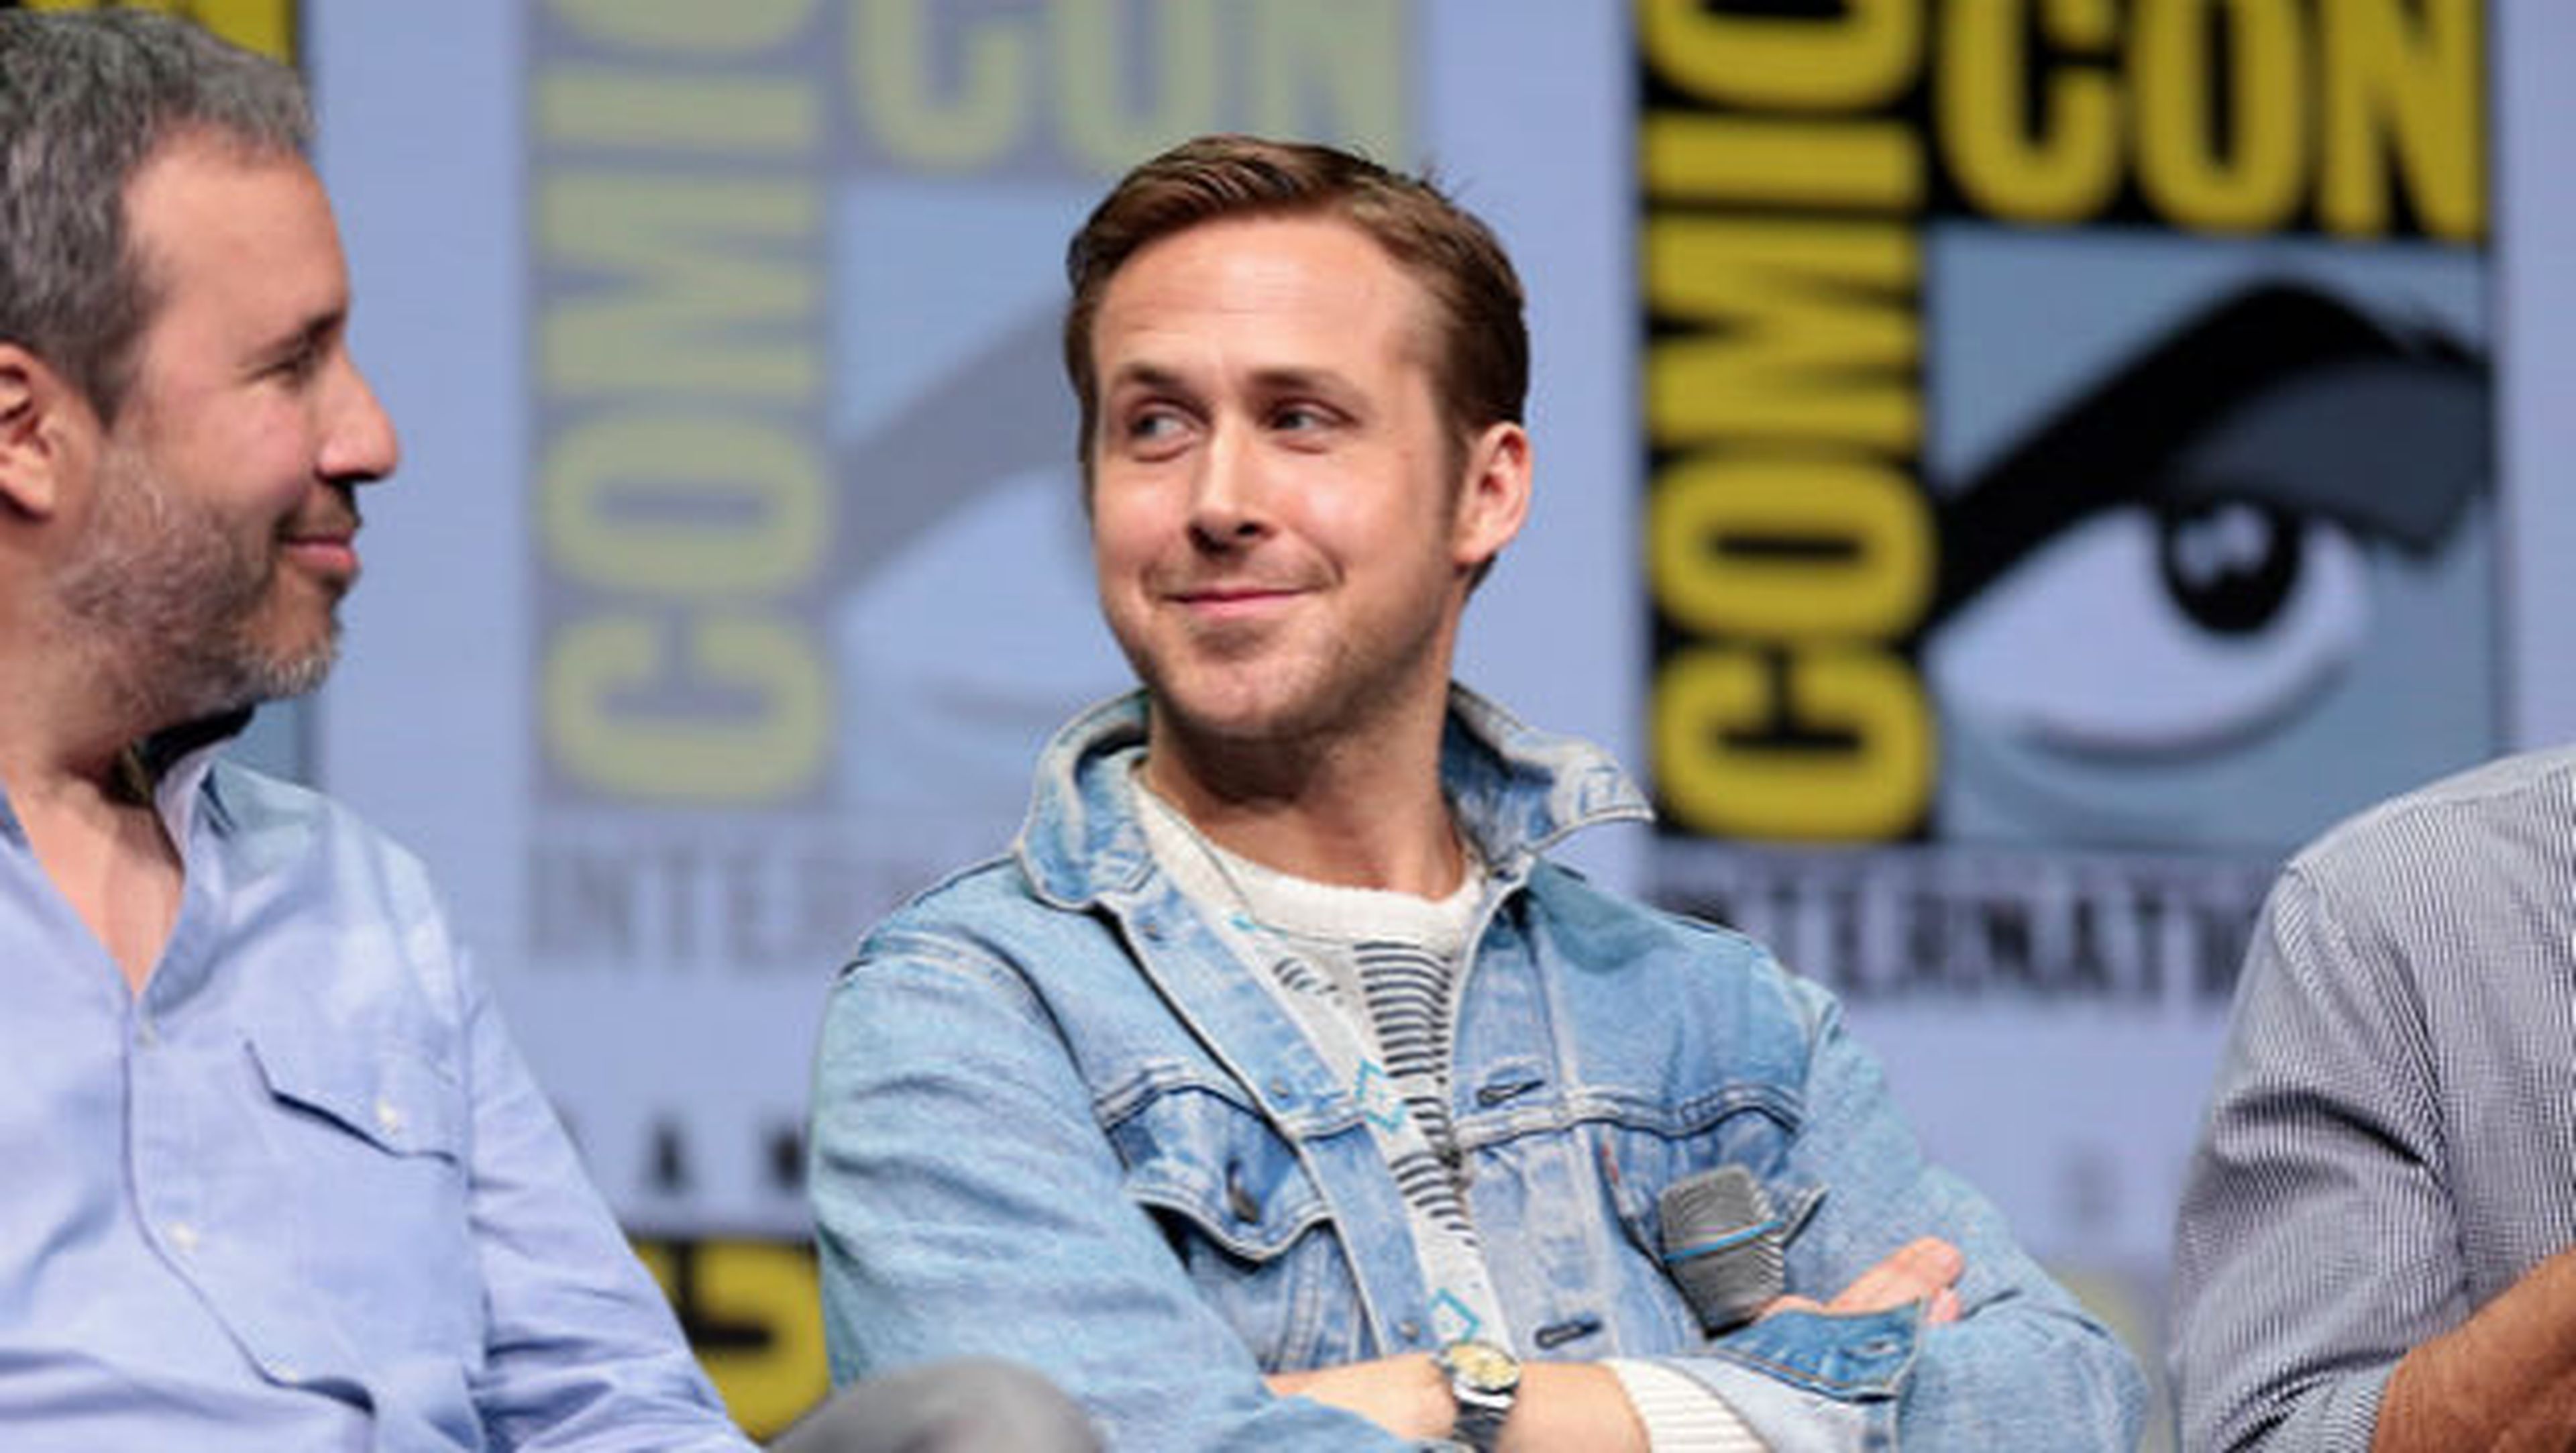 Una criptomoneda recauda 800.000 dólares con una foto de Ryan Gosling.